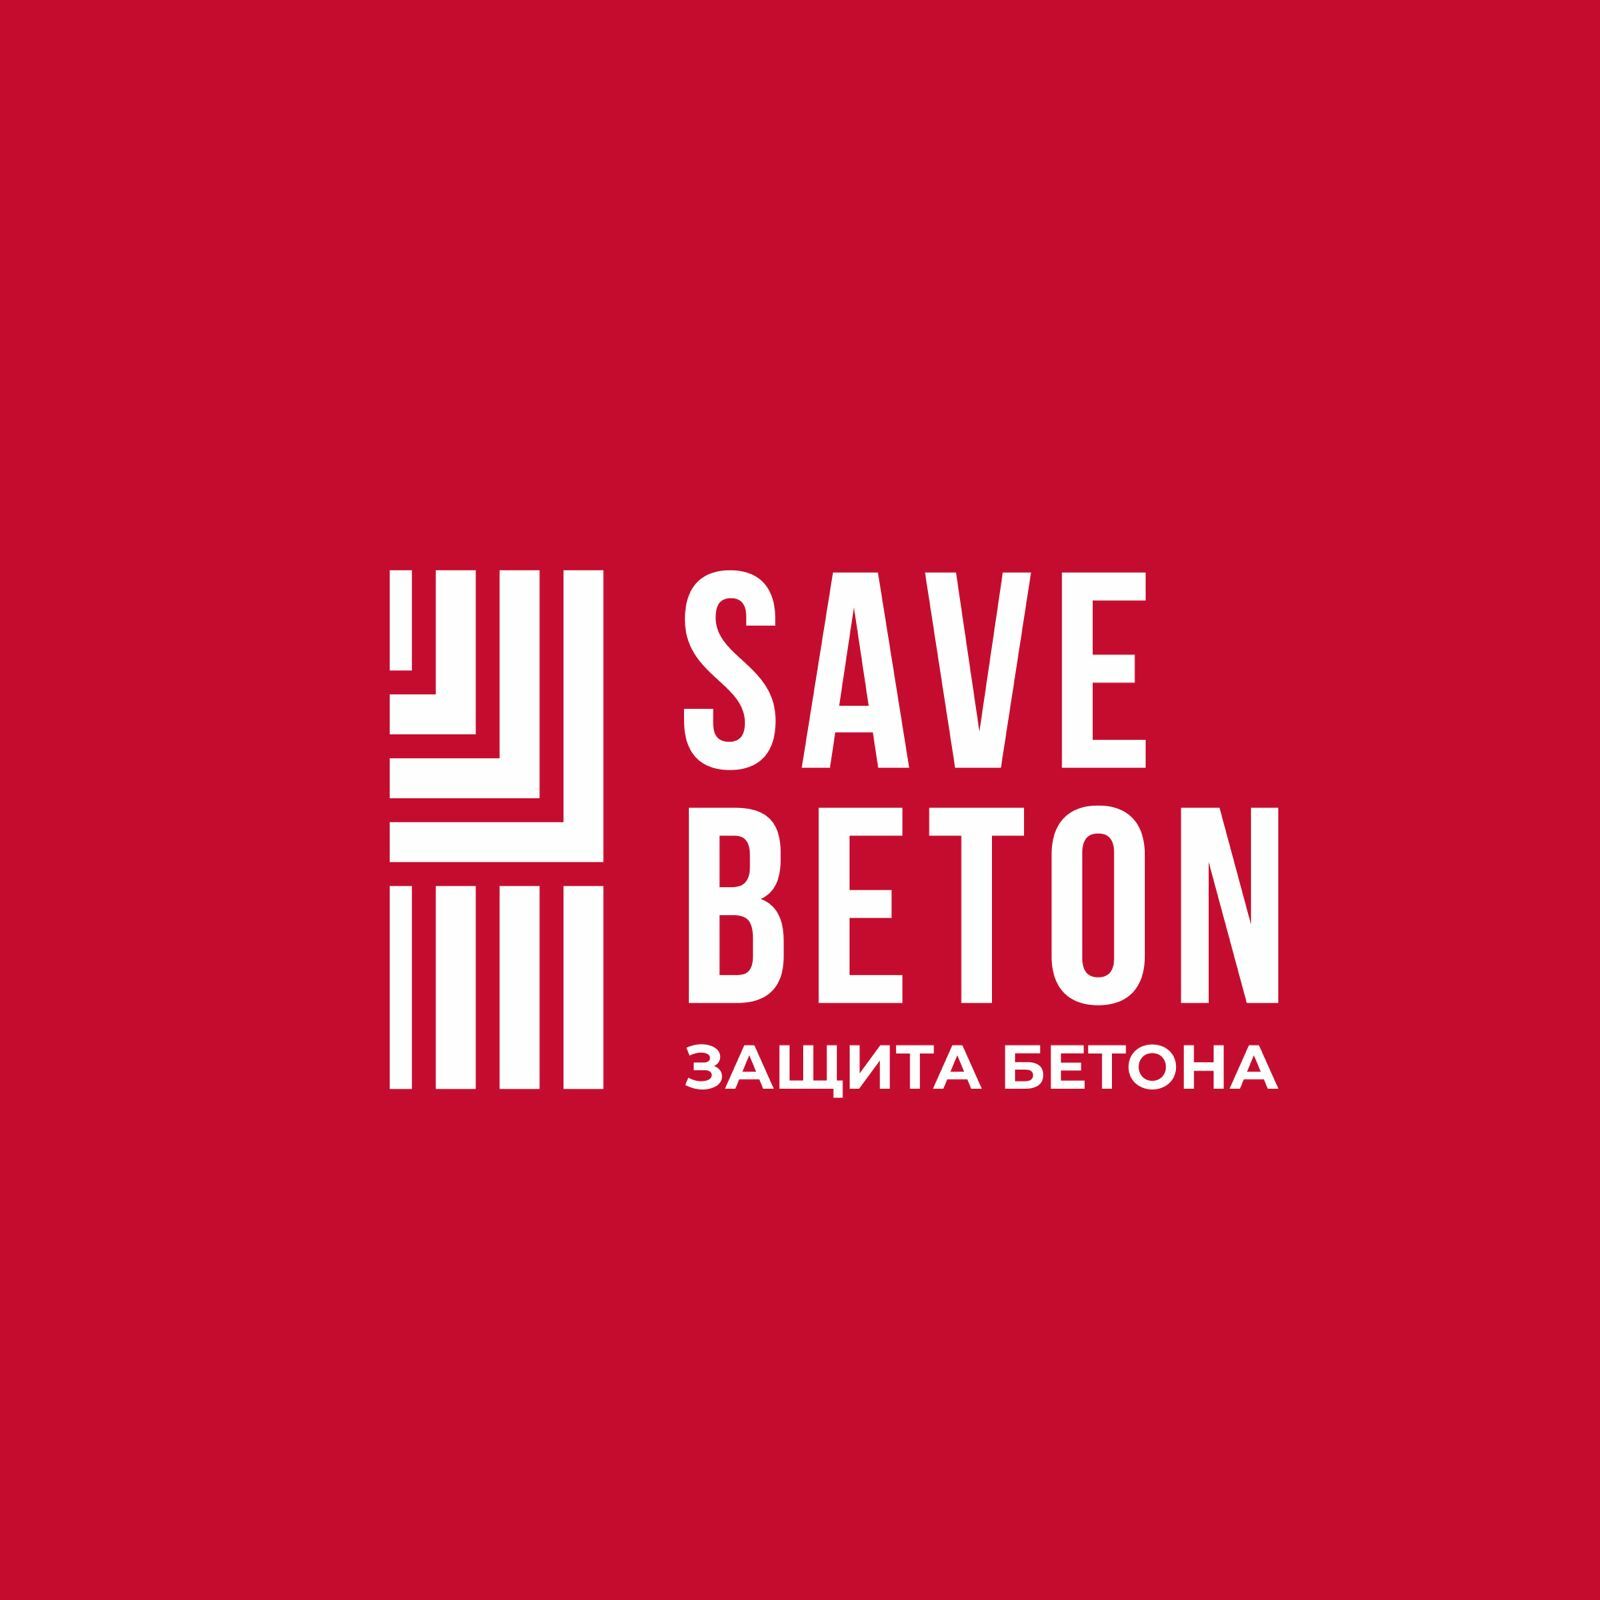 SAVE BETON